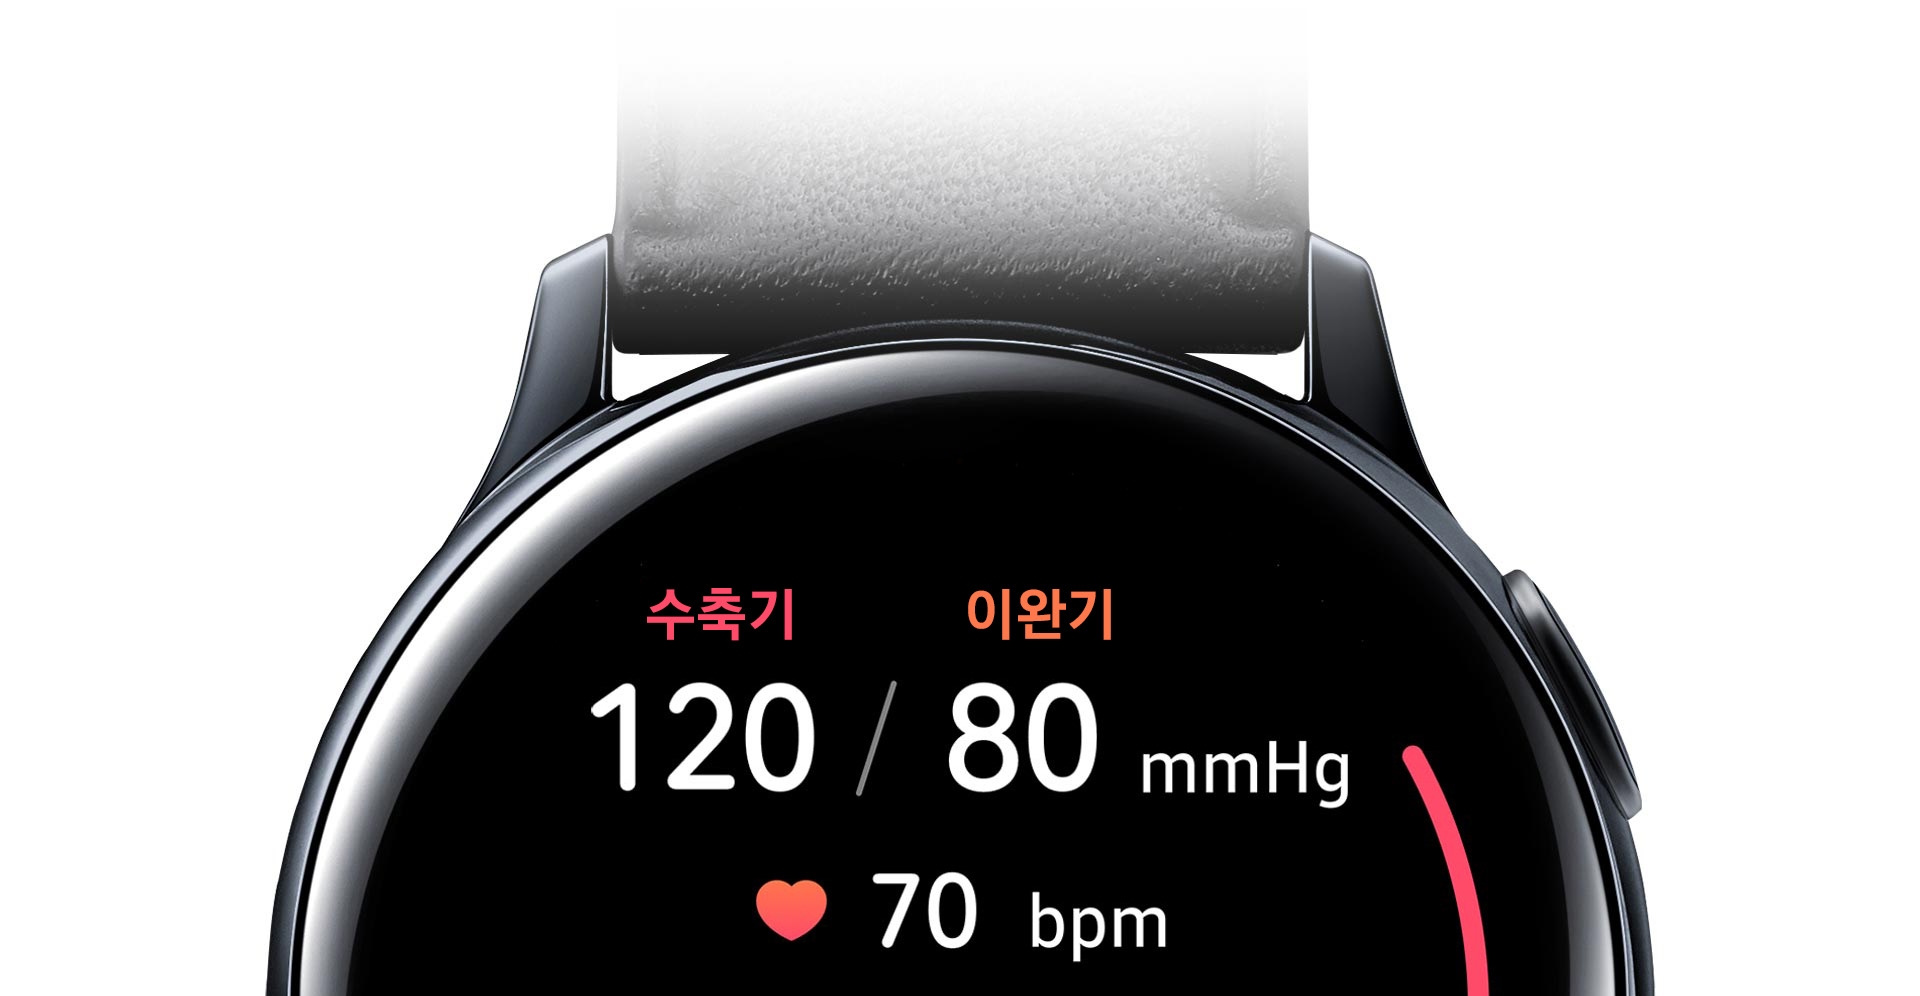 갤럭시 워치 액티브2의 부분 정면도이며, 혈압 측정 GUI를 보여줍니다.